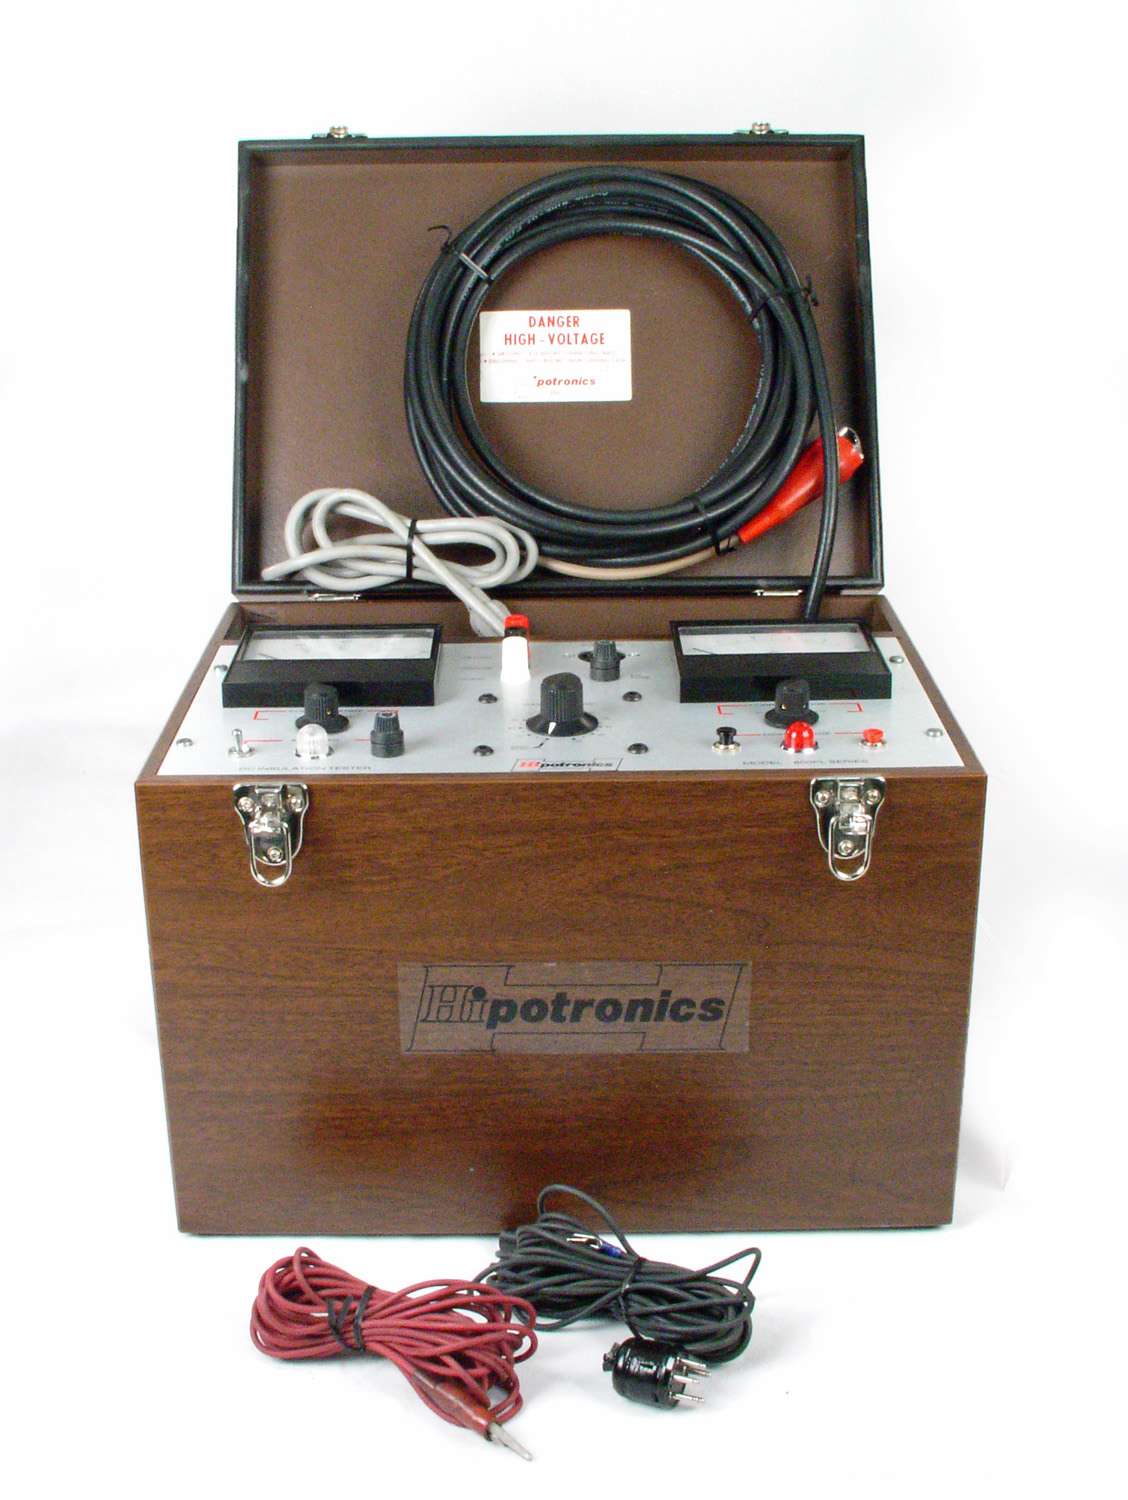 Hipotronics 880PL for sale